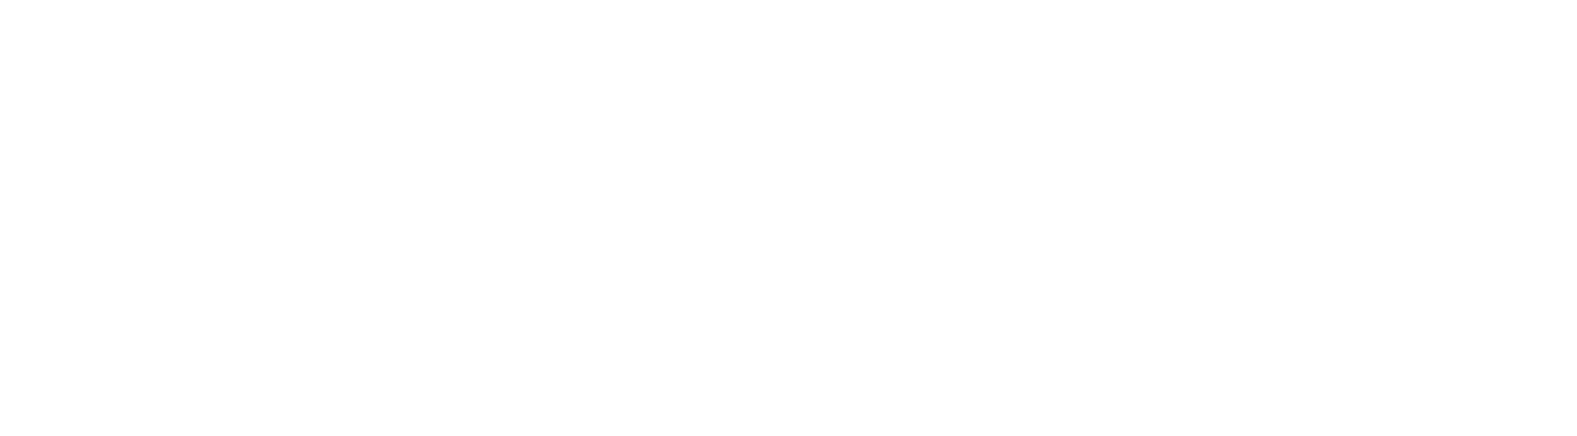 Standex logo large for dark backgrounds (transparent PNG)